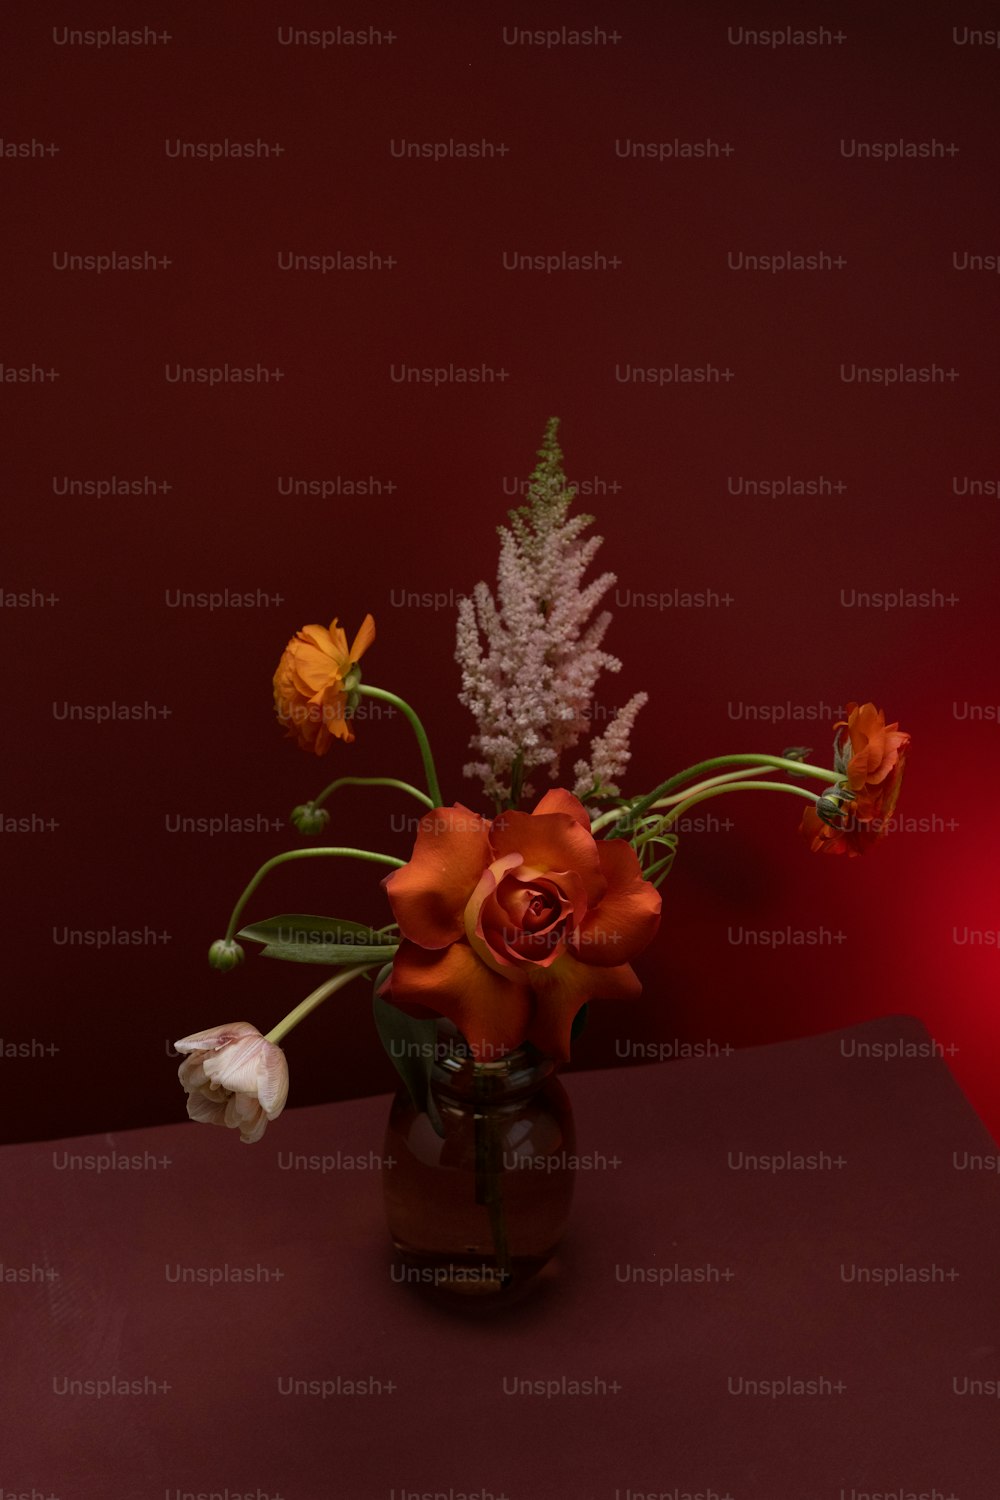 un jarrón lleno de flores encima de una mesa